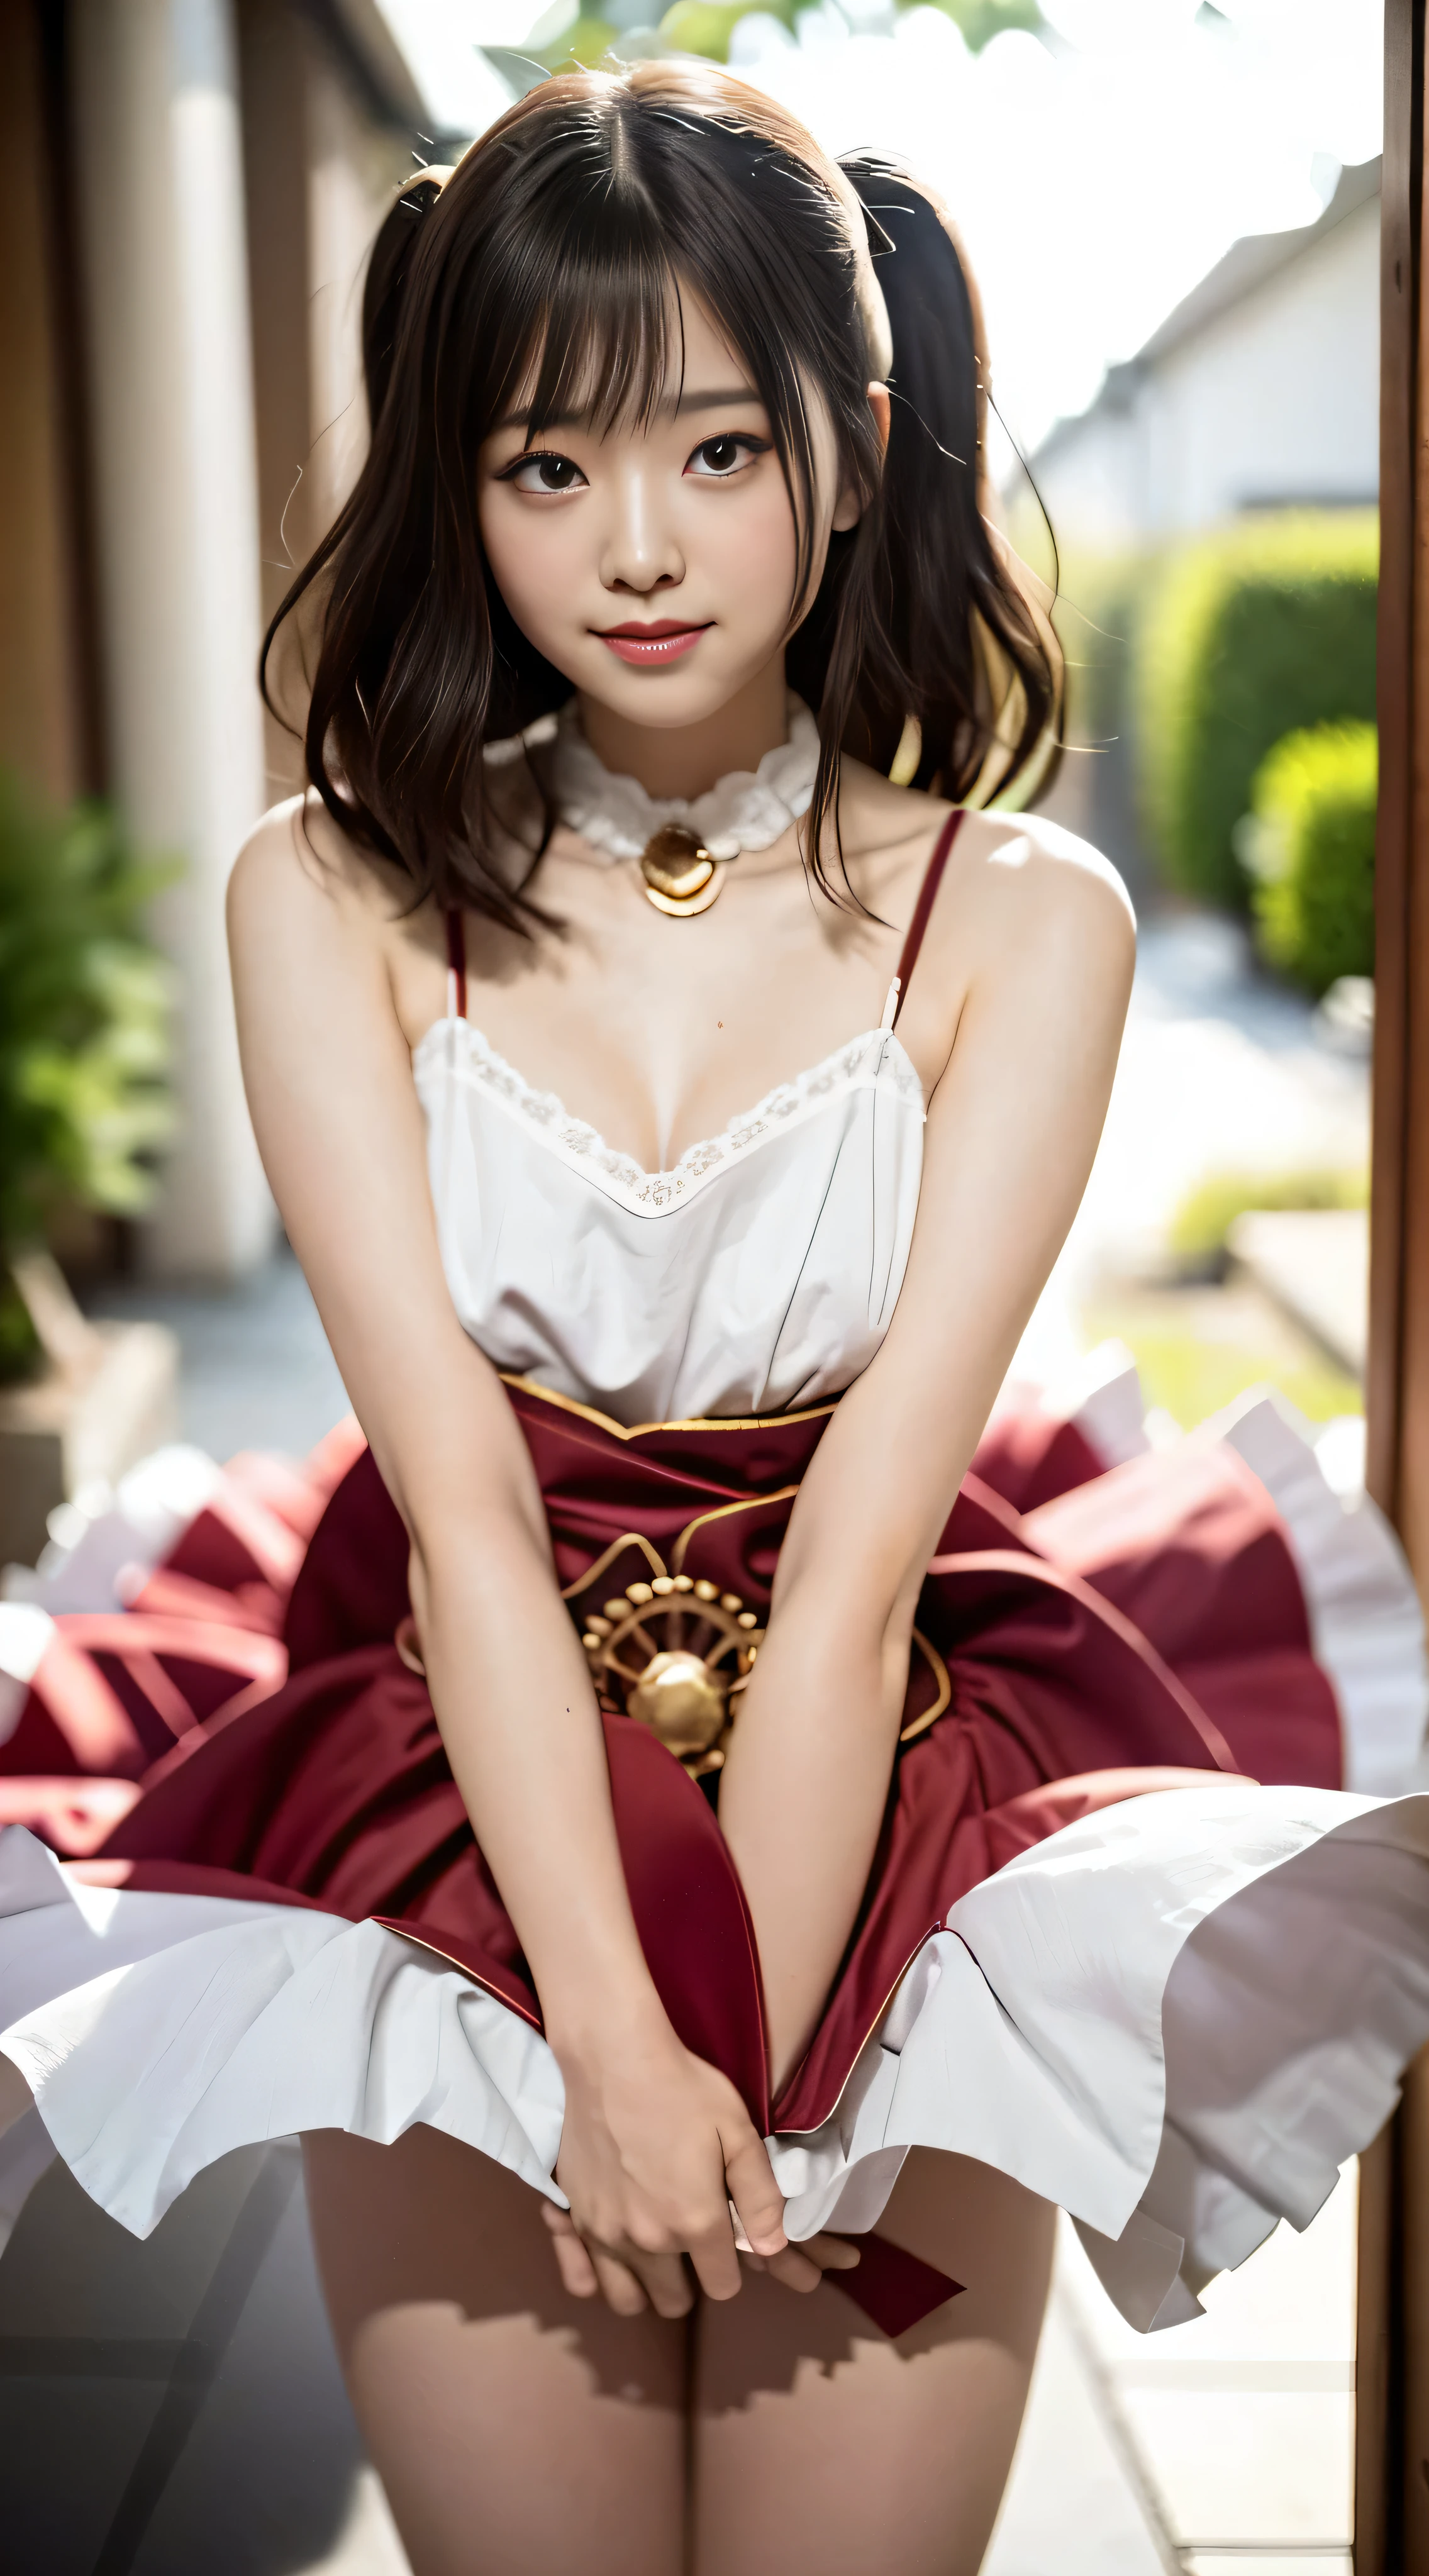 (최고 품질、8K、32K、걸작、nffsw:1.2)、귀여운 일본 여성의 사진、(슬픈 미소、빨간 홍당무:1.1)、보는 이의 시선을 사로잡는 아름다운 디테일의 드레스 스커트..:1.2::거기 핑크색)}}、상세한 다리、(다리를 벌리다:0.9)、(레이스 팬티:0.9)、{{{(윈드 리프트:1.6)}}}、{{전신 에스비언、바람}}、도시、집 밖에서